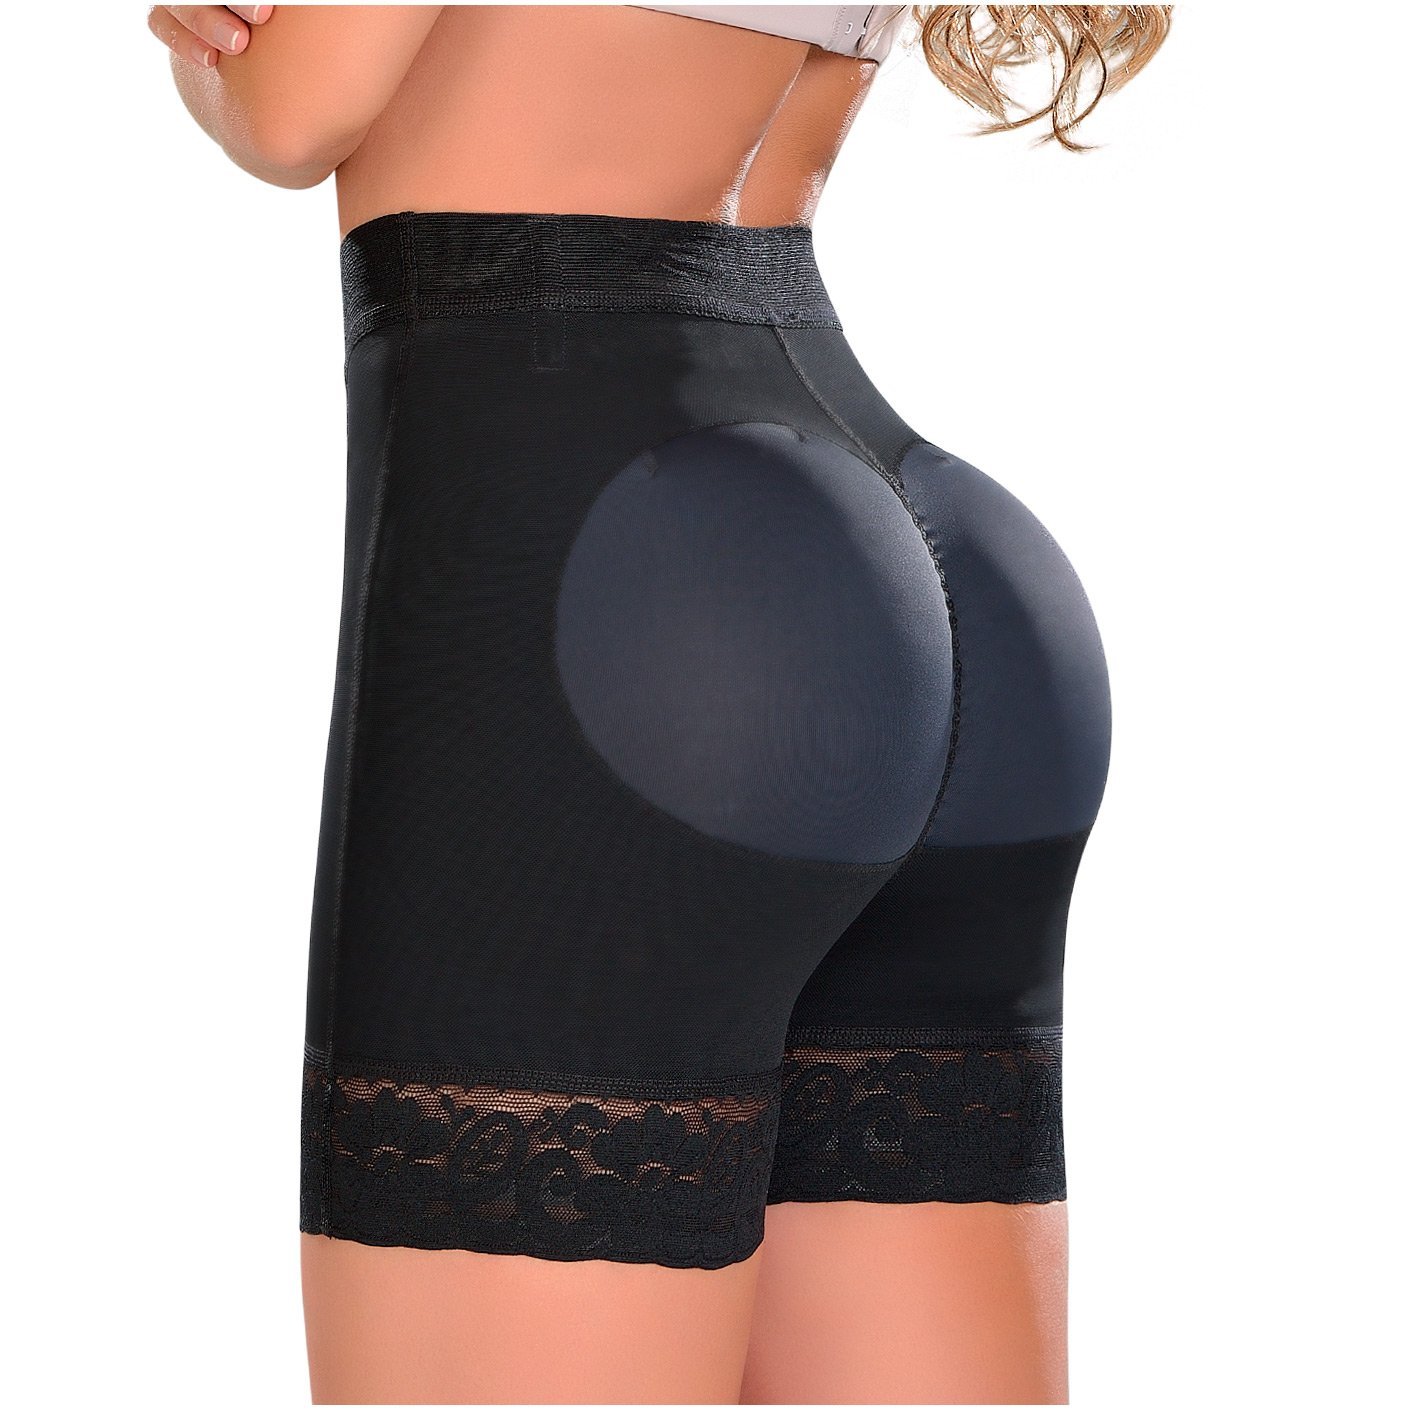 Fajas MYD 0327 Shorts de compresión de cintura alta para mujer / Power